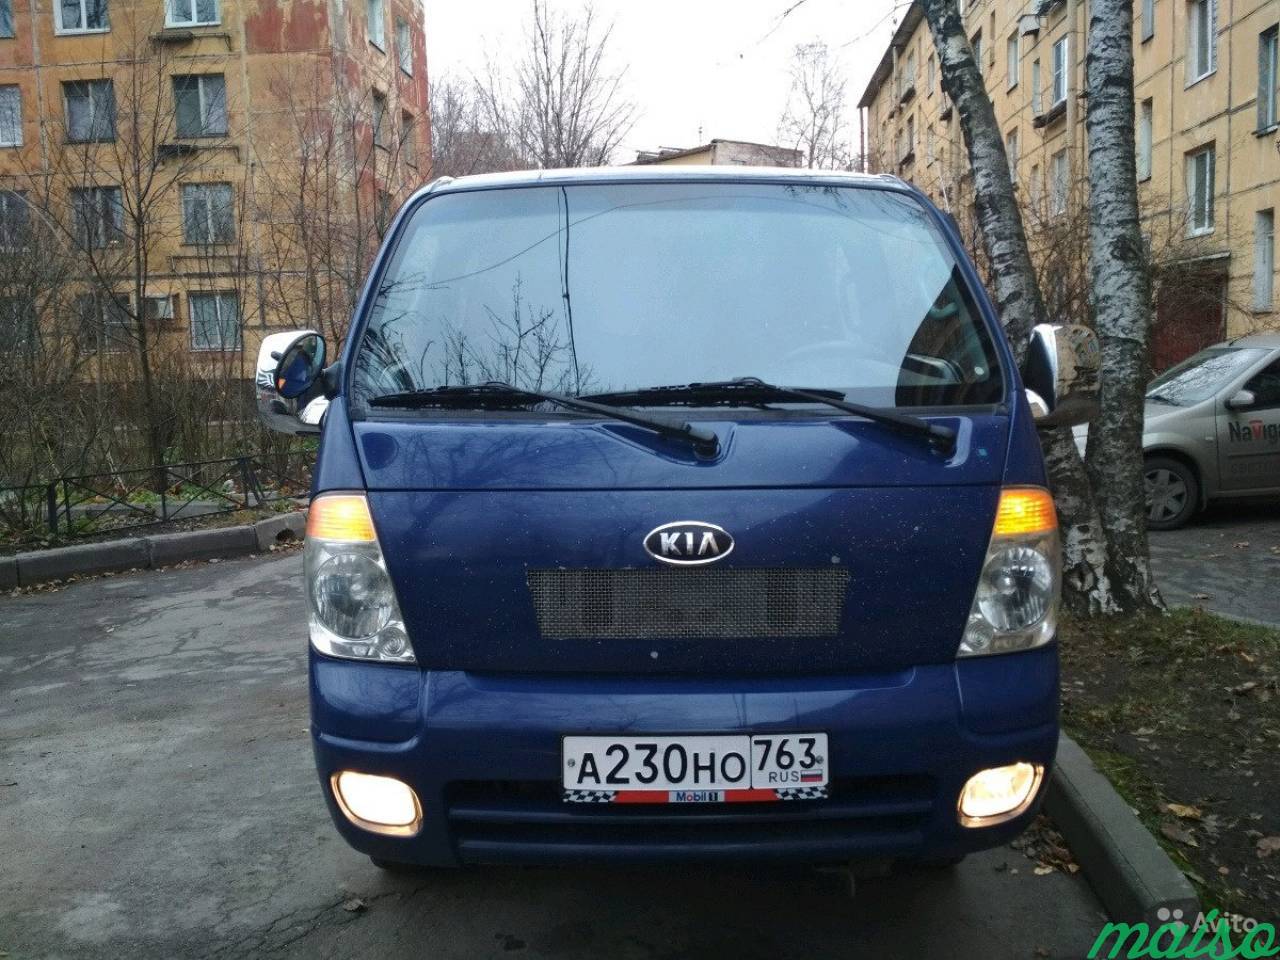 Продам грузовик Кия Бонго в Санкт-Петербурге. Фото 1